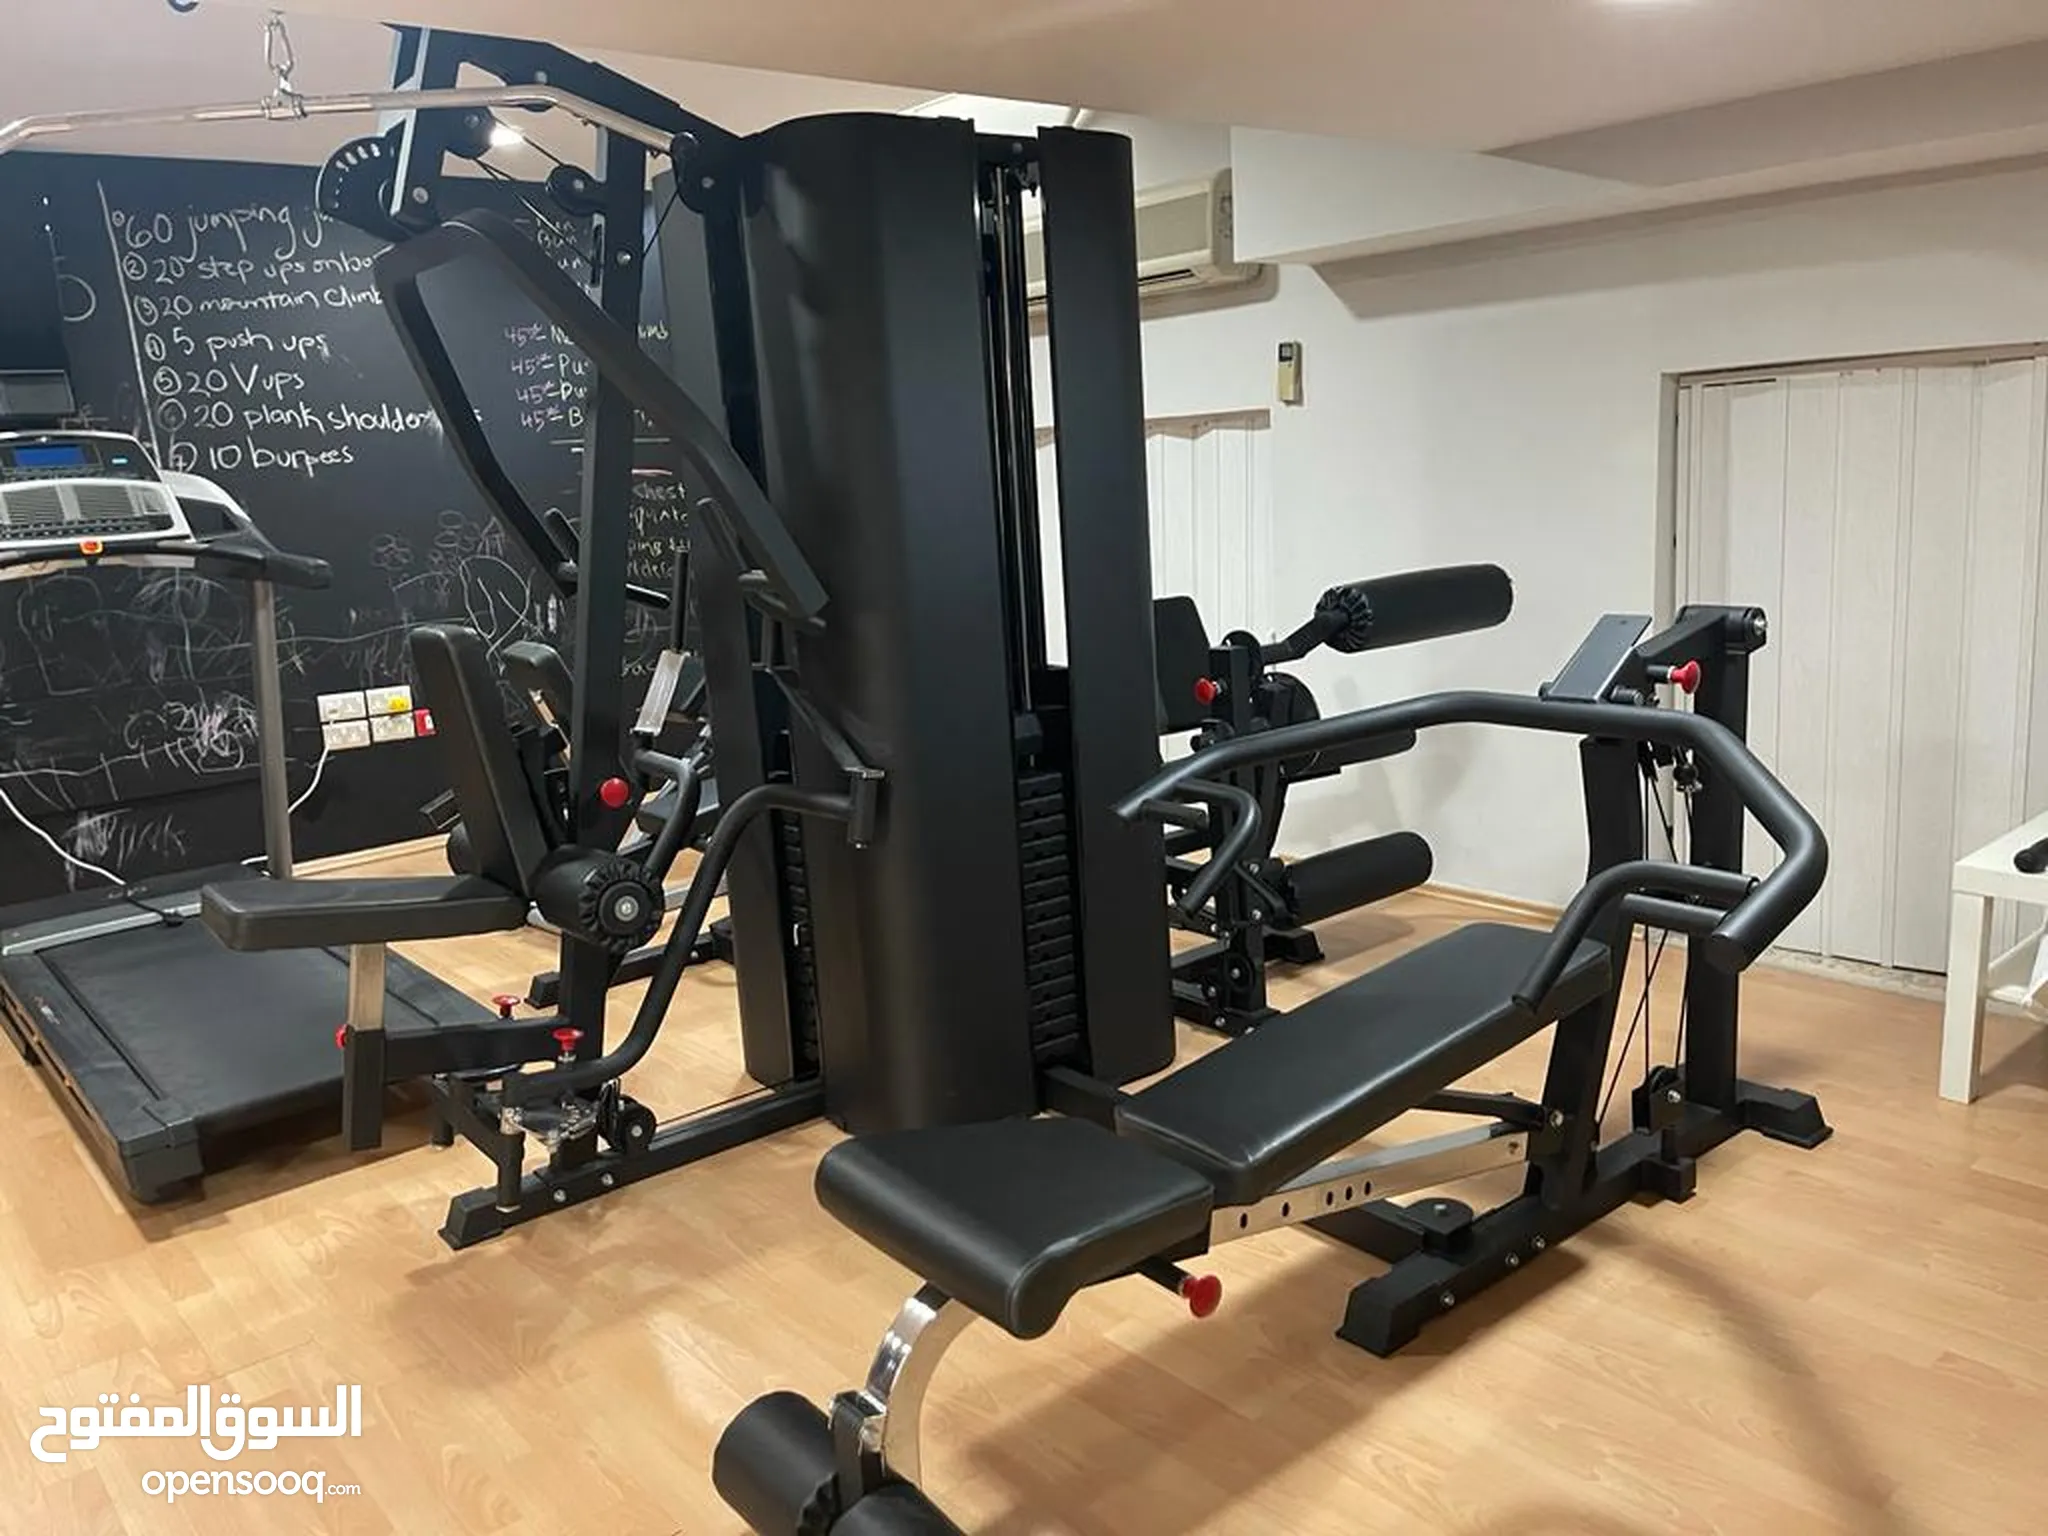 اجهزة رياضية - معدات رياضية : ادوات رياضية منزلية في الإمارات : أفضل سعر